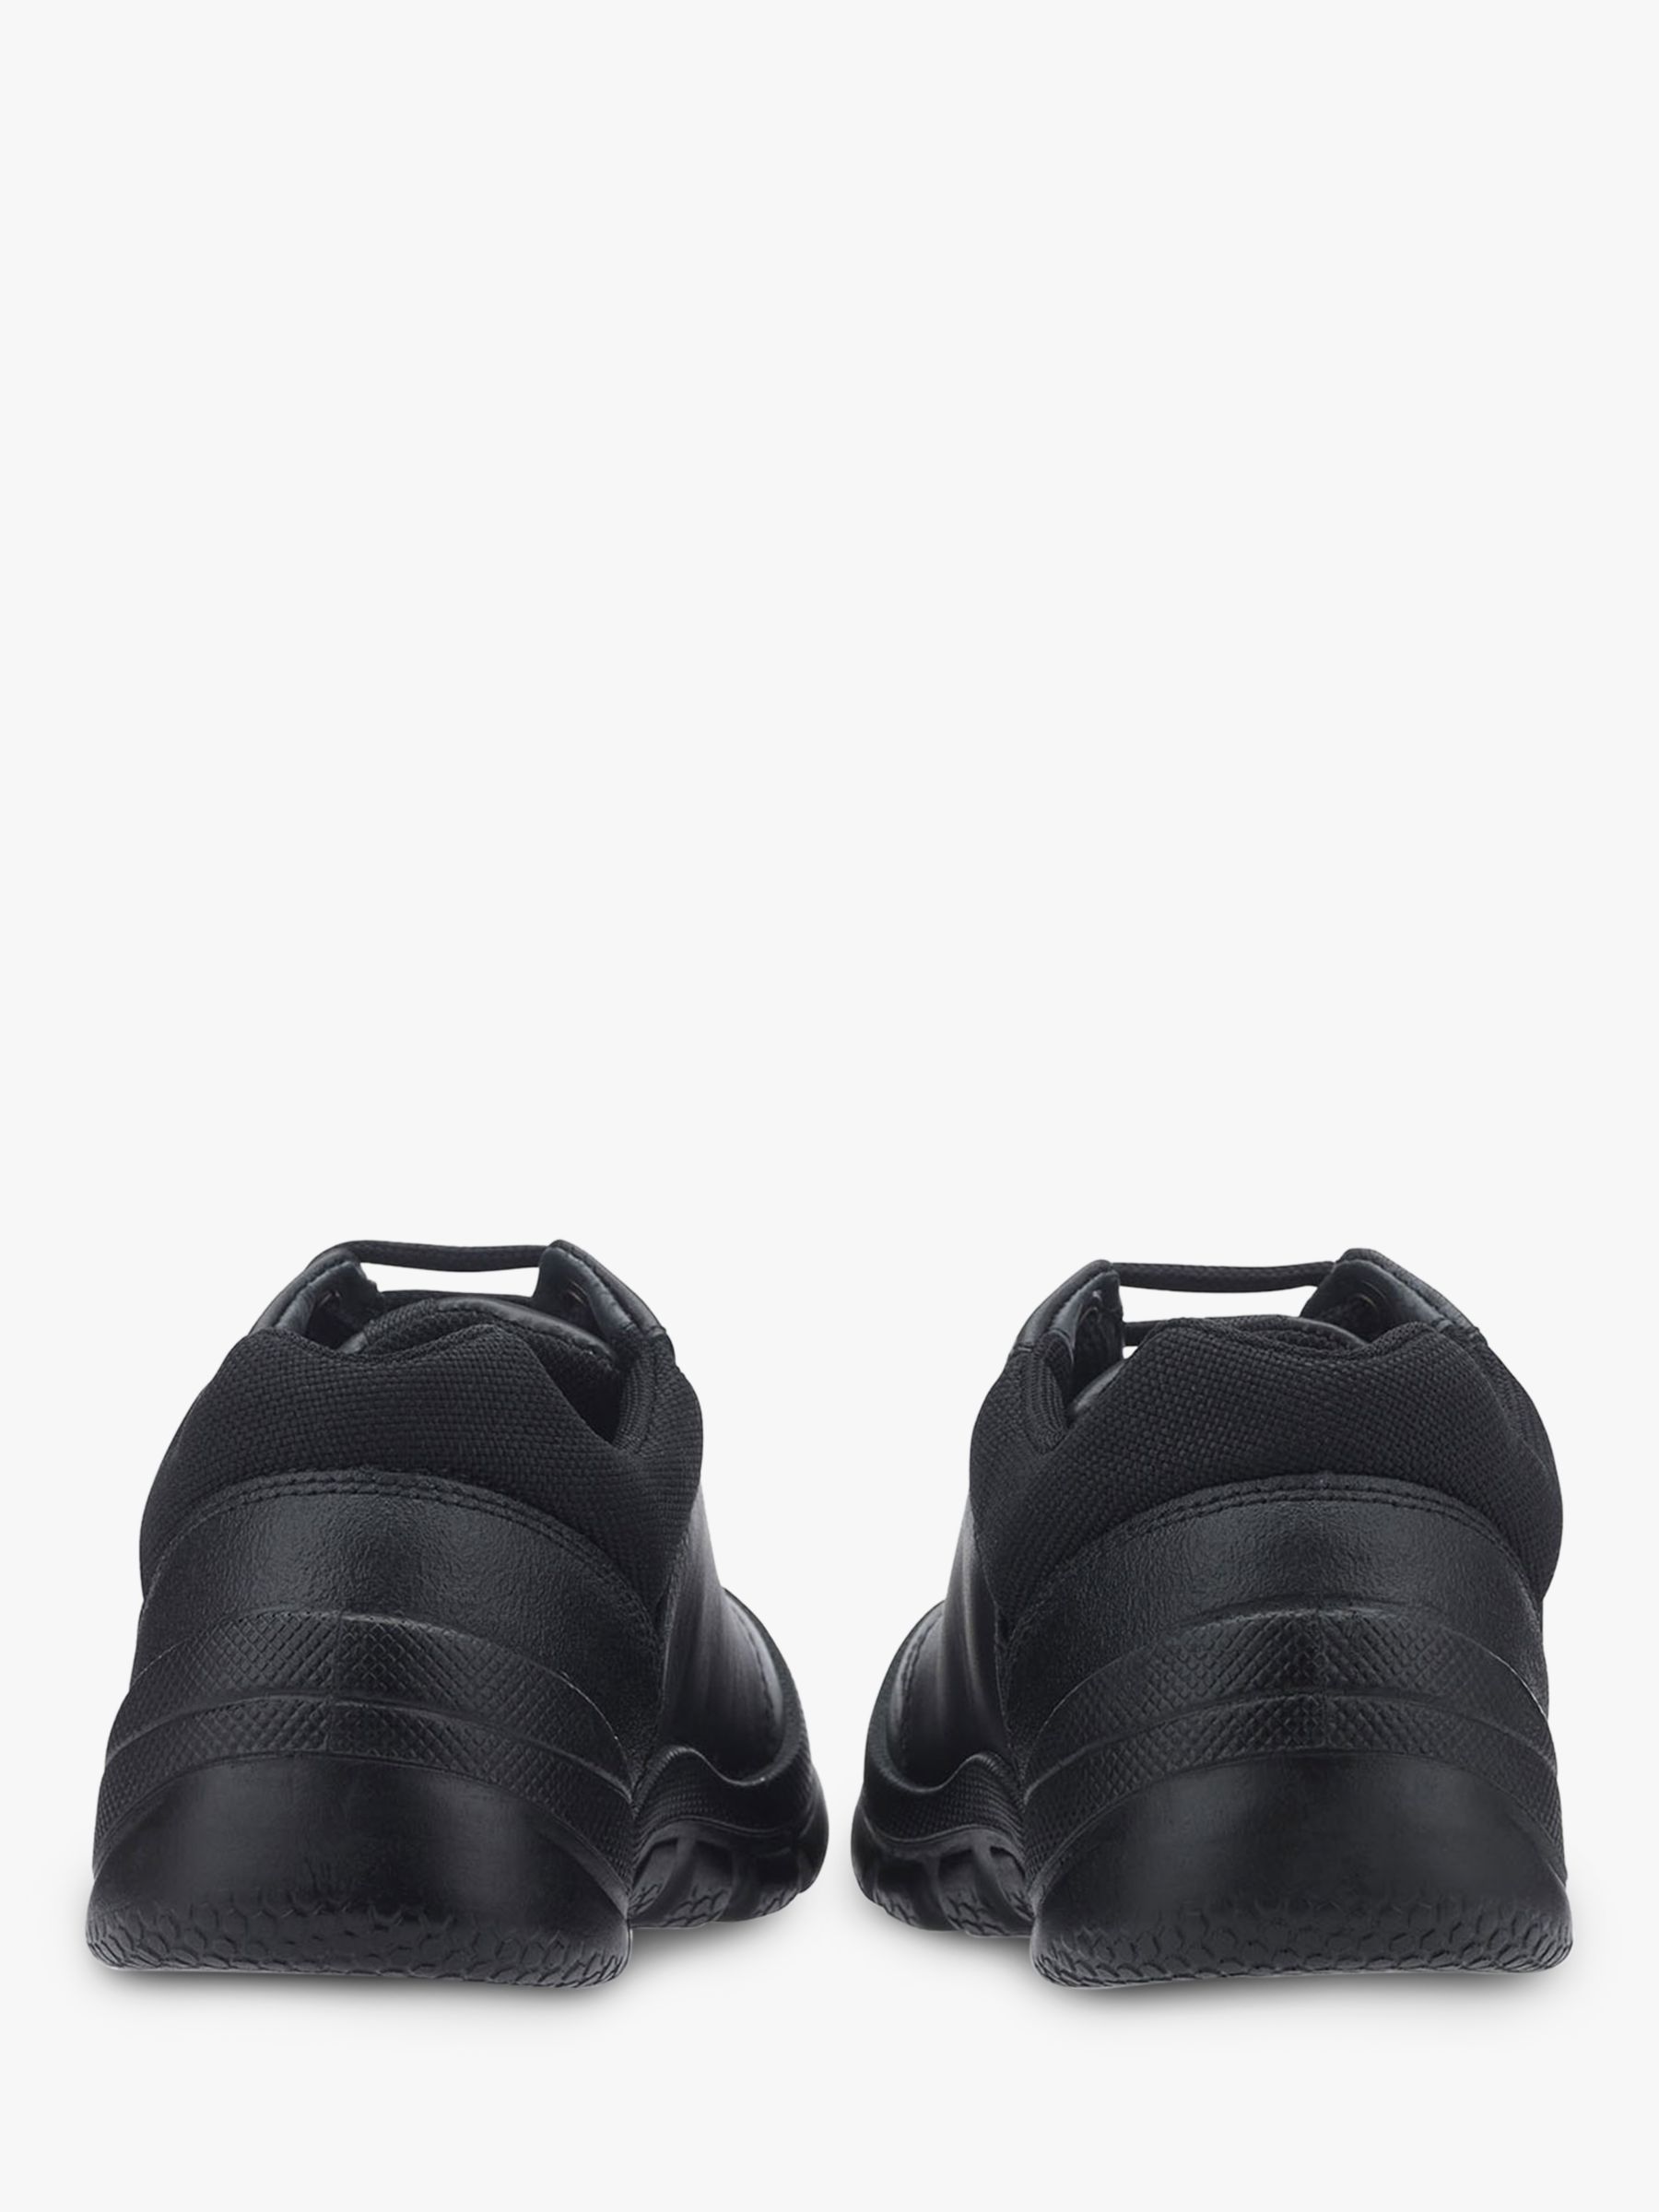 Buy Start-Rite Kids' Rhino Sherman Shoes, Black Online at johnlewis.com